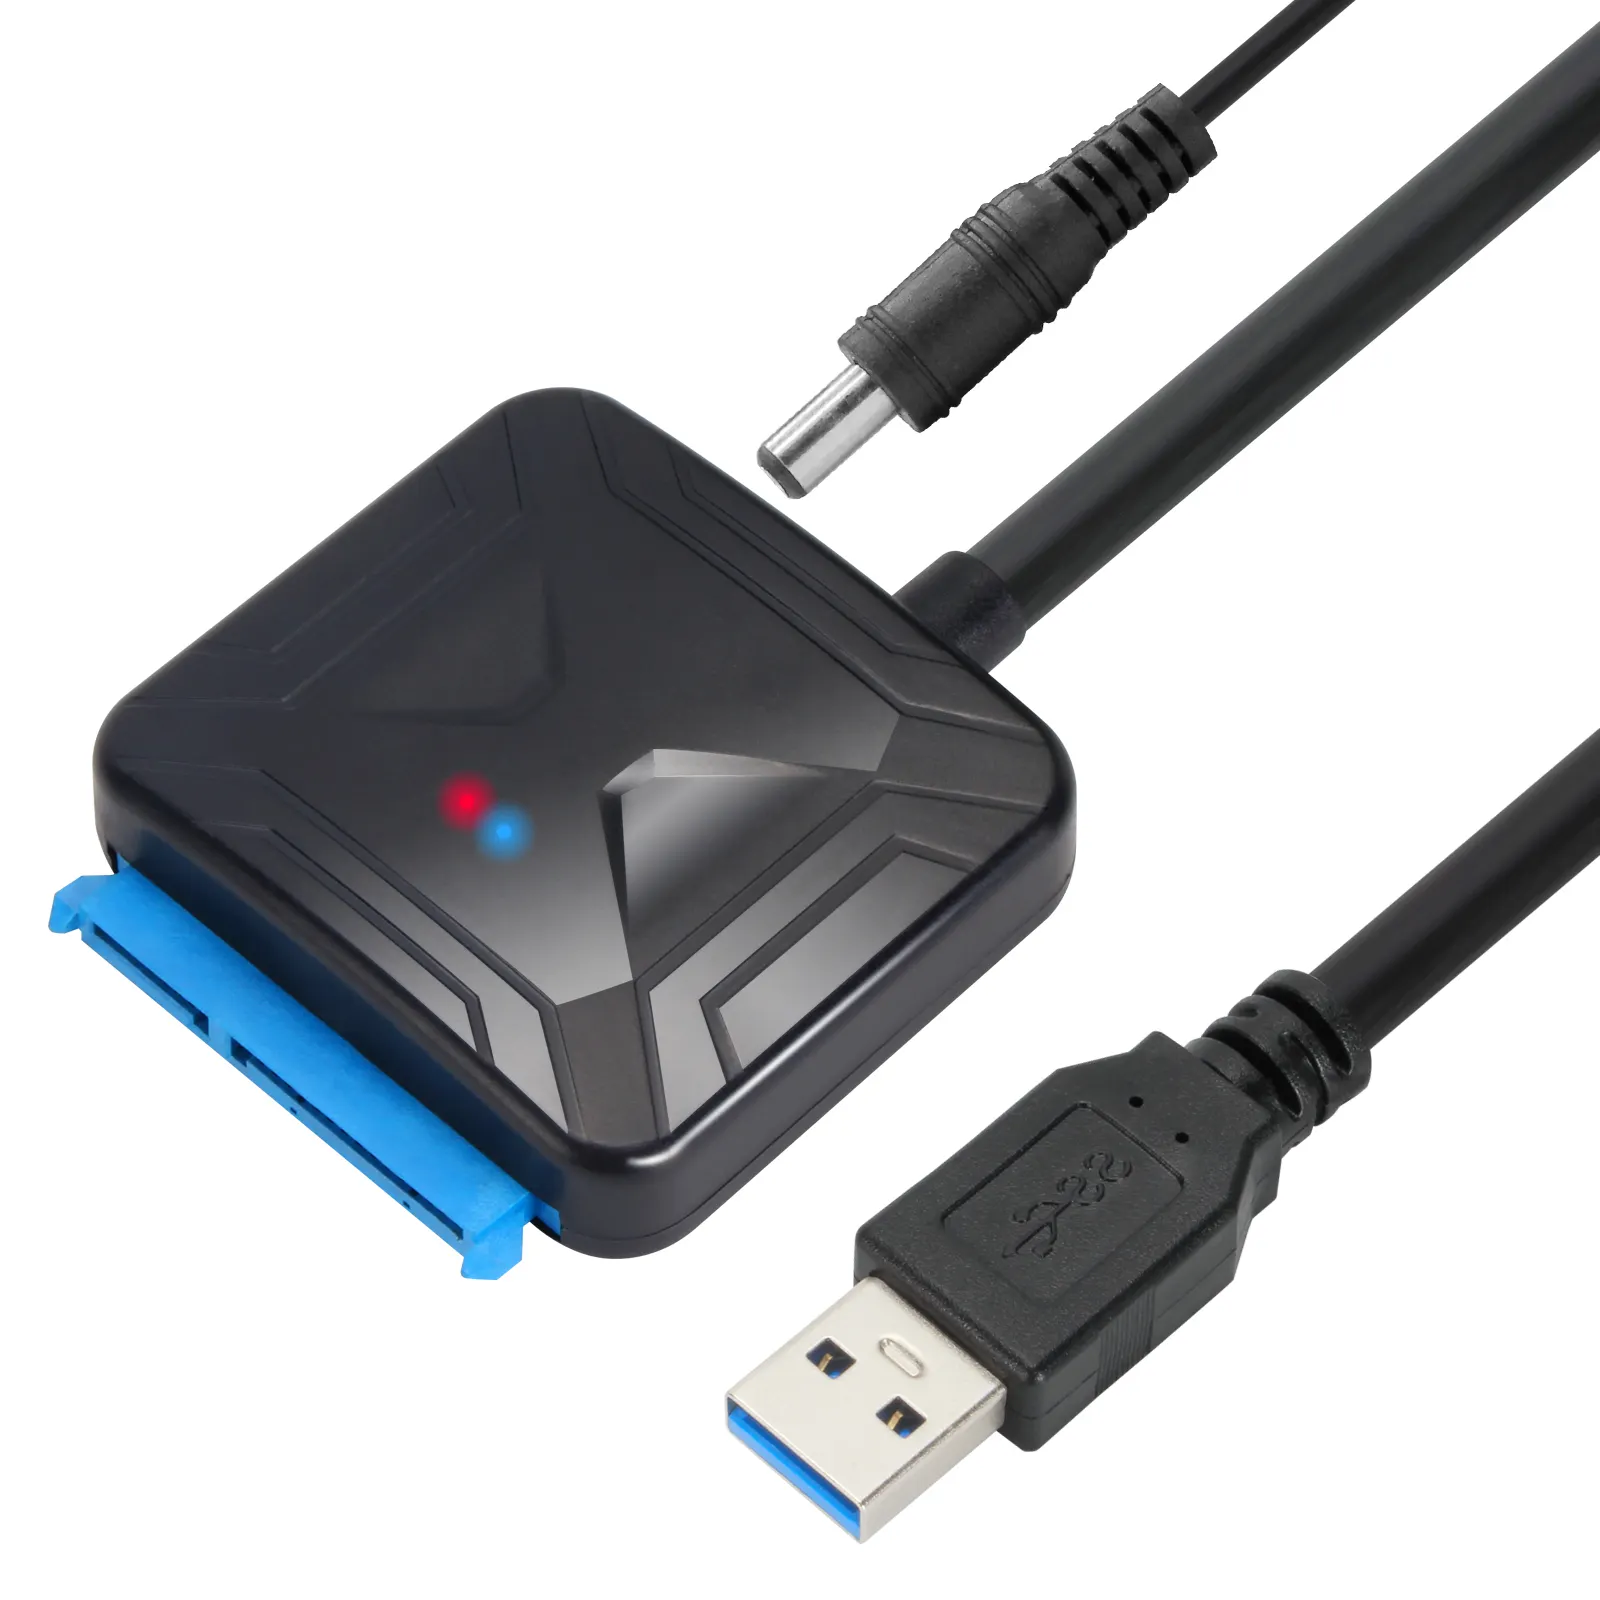 VCOM kabel adaptor Hard Drive, konverter kabel adaptor Hard Drive Sata USB 3.0 ke Sata 3 untuk HDD SSD 2.5/3.5 inci